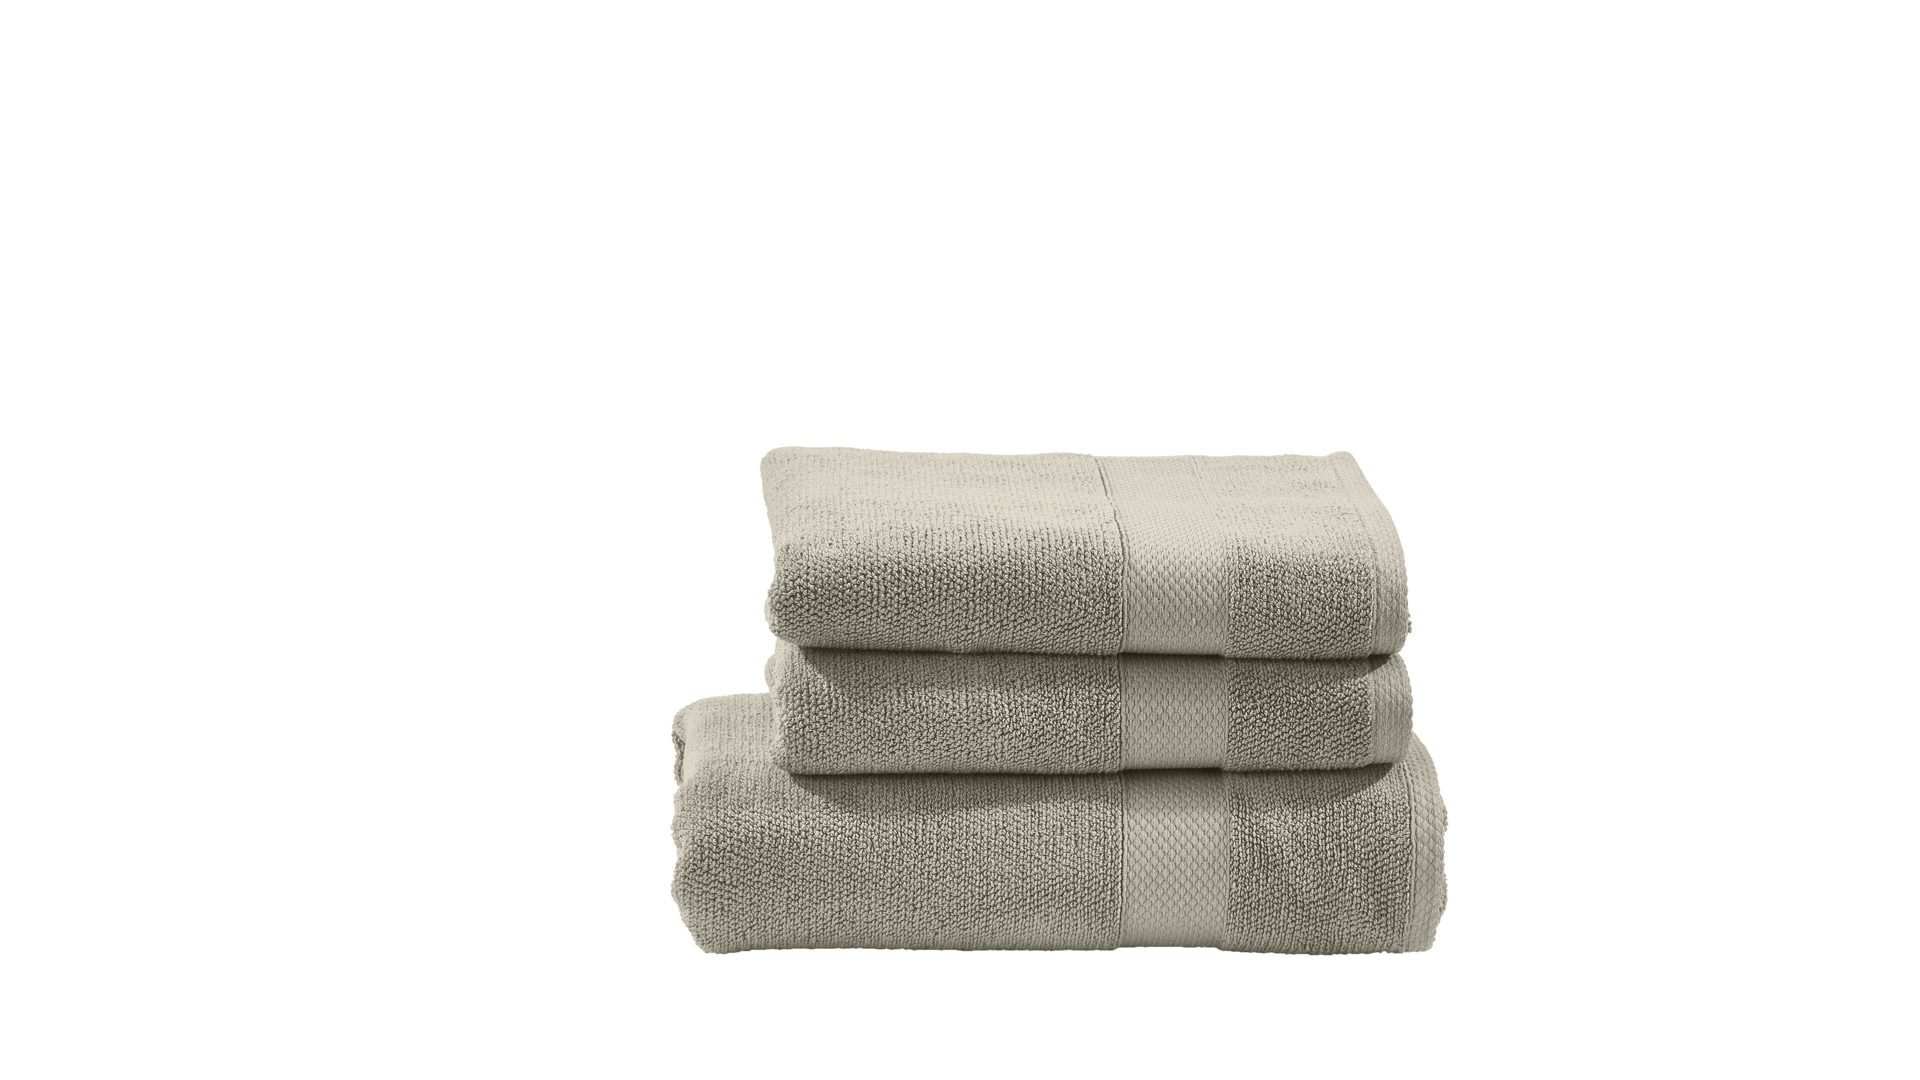 Handtuch-Set Done® by karabel home company aus Stoff in Beige DONE® Handtuch-Set Deluxe für Ihre Heimtextilien taupefarbene Baumwolle  – dreiteilig